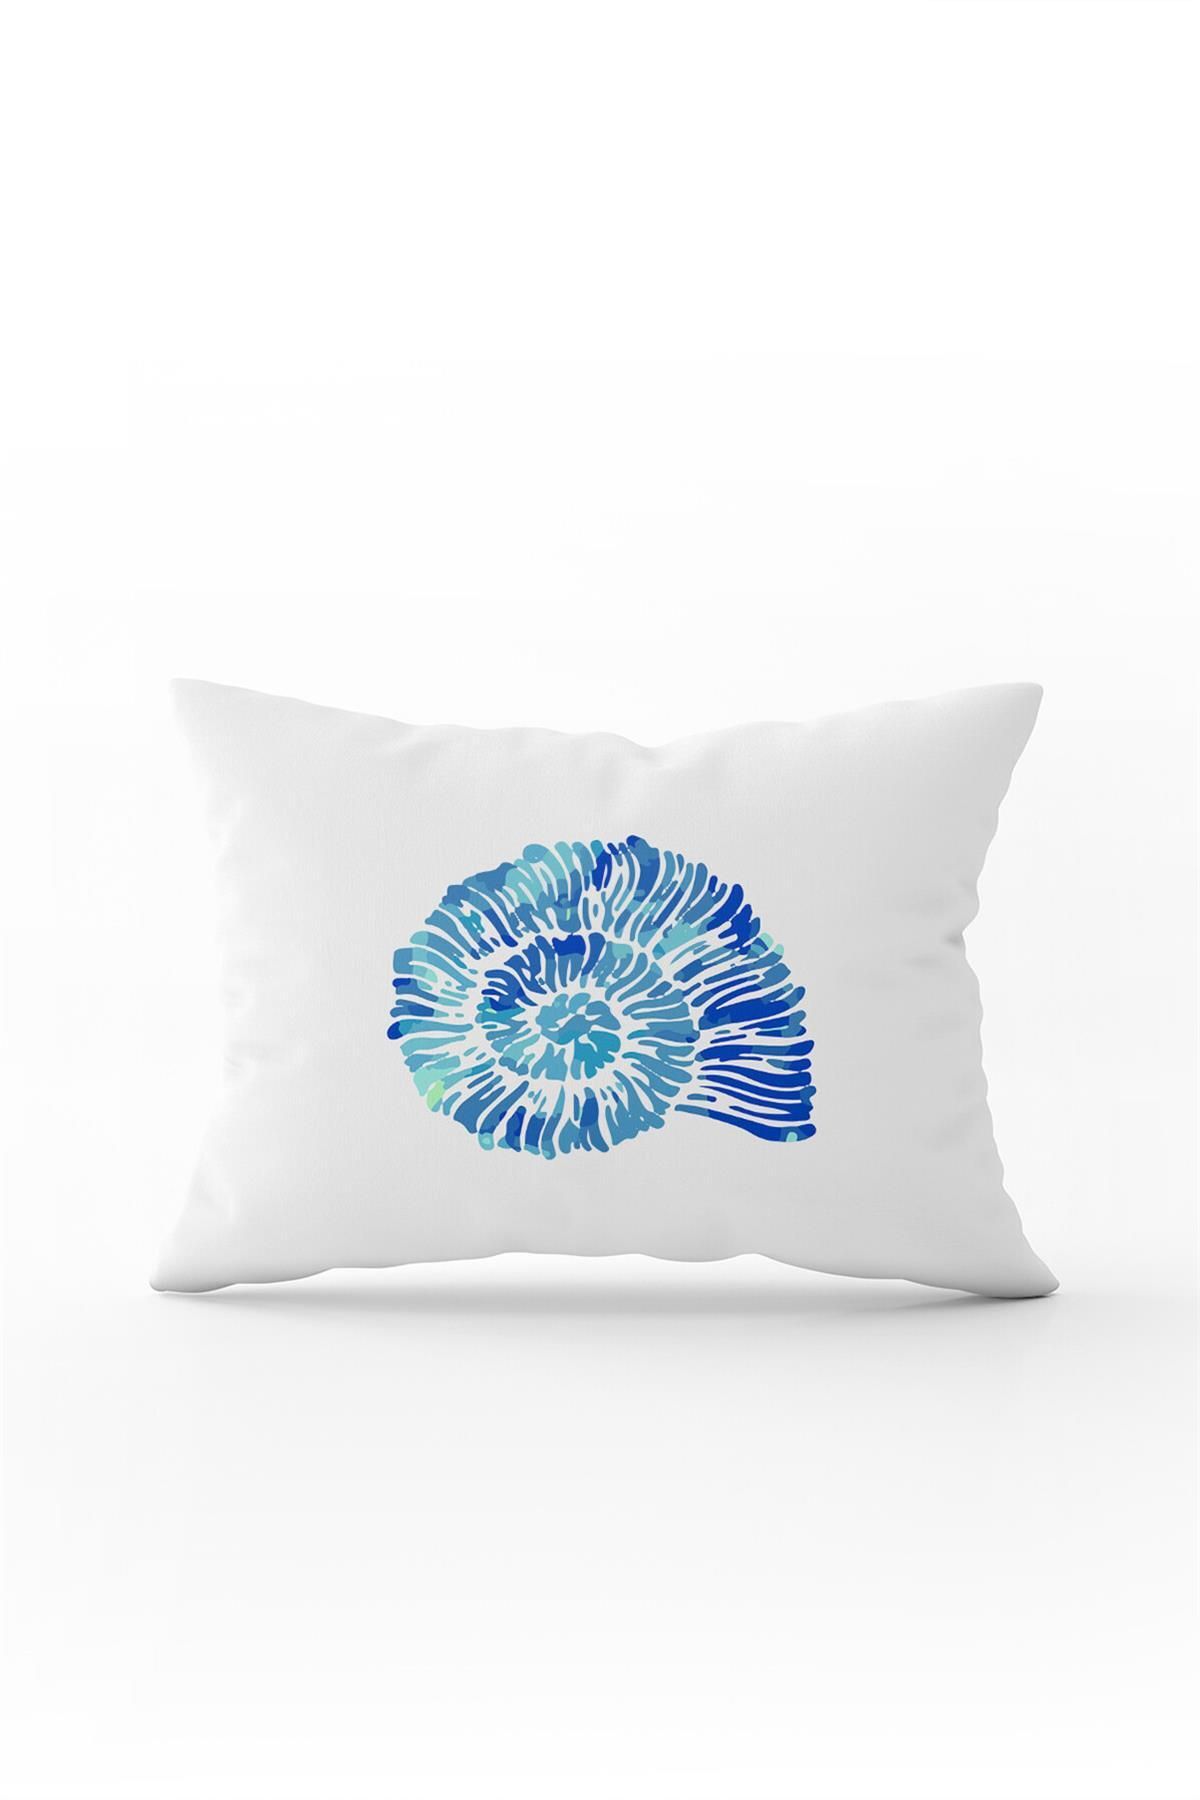 Cango Home Beyaz Mavi Deniz Kabuğu Marin Desenli Dijital Baskılı Kırlent Yastık Kılfı Cgh531-3550 Çift Tarafı B